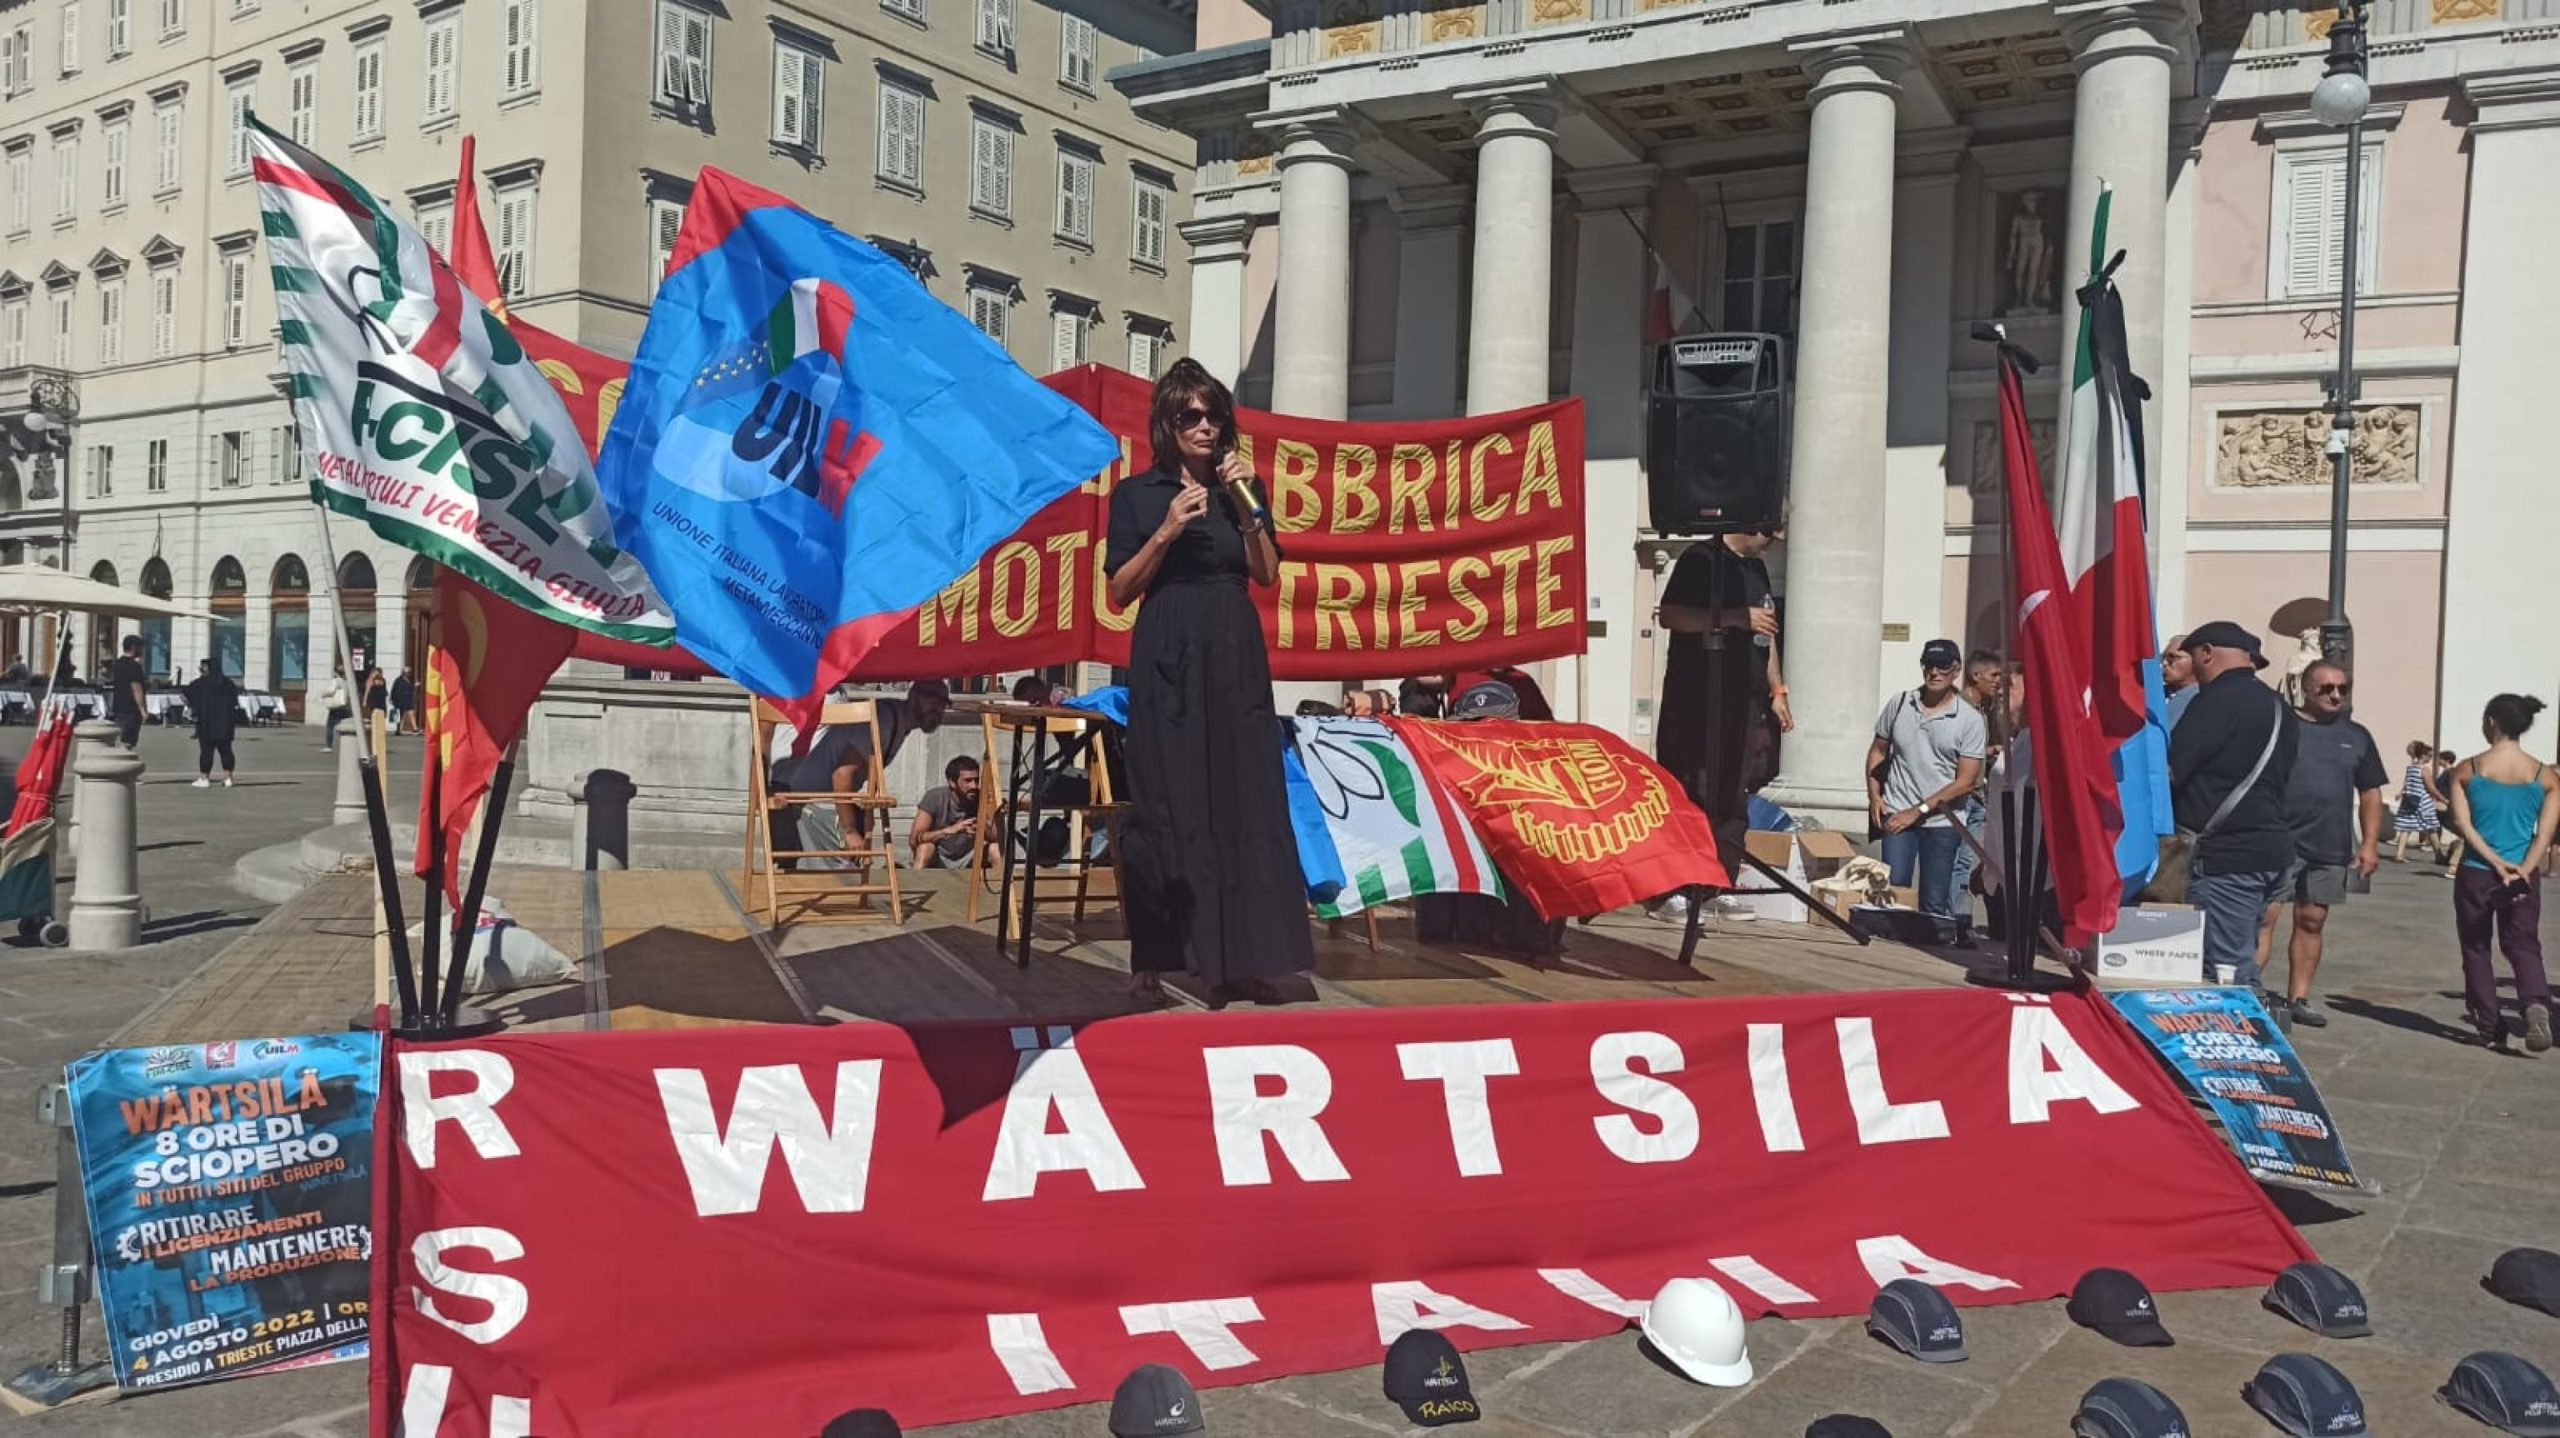 Sono circa 700 le persone convenute al presidio organizzato dai lavoratori della Wartsila di Trieste in piazza della Borsa, organizzato in occasione dello sciopero di 8 ore indetto in tutti gli impianti del Gruppo in
Italia (Genova, Napoli, Taranto e Cuneo). ANSA/VALERIA PACE